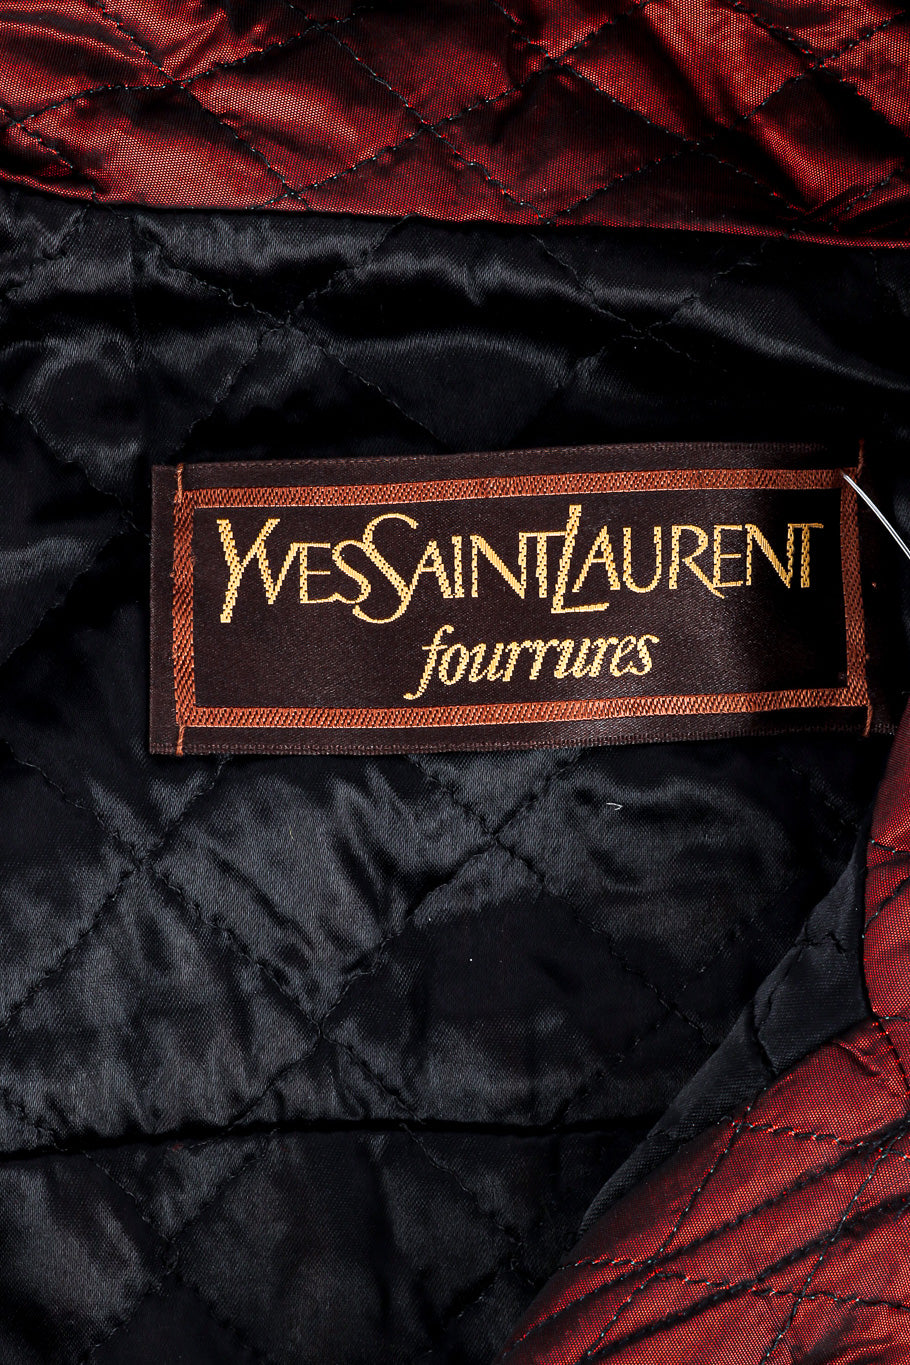 Quilted fur trim coat by Yves Saint Laurent close up label @recessla